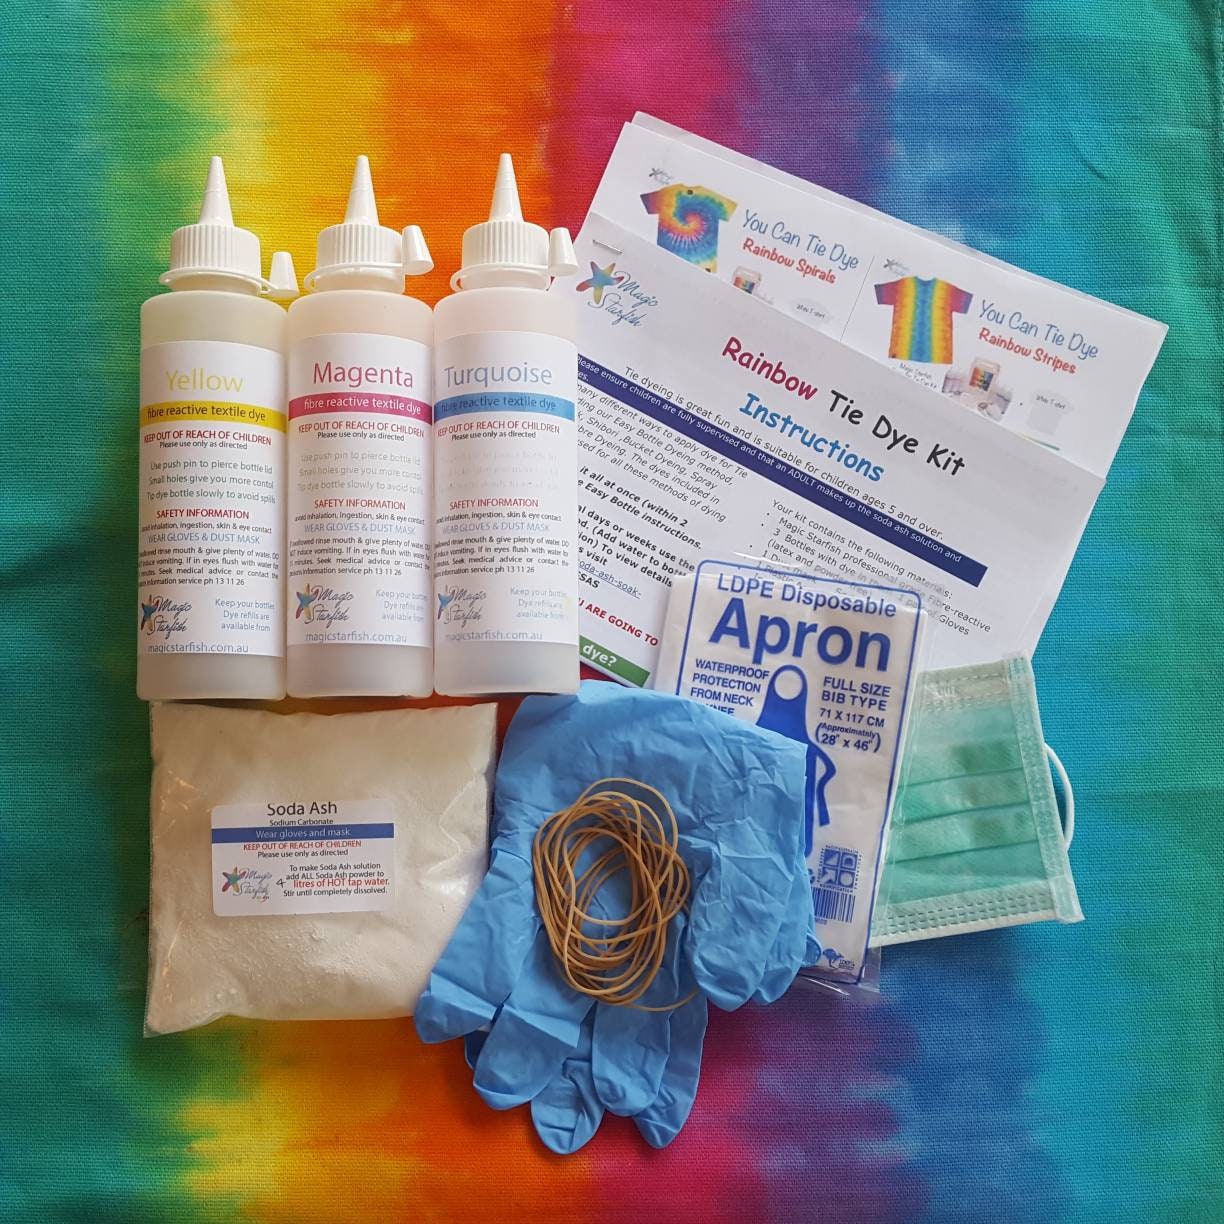 Pastel Tie Dye Kit for Large Groups, DIY Tie Dye Kit, Tie Dye Kit Party  Supplies, Girls Tie Dye Shirt, Tye Die Kits for Adults, Tye Dye Kits, 18  Full